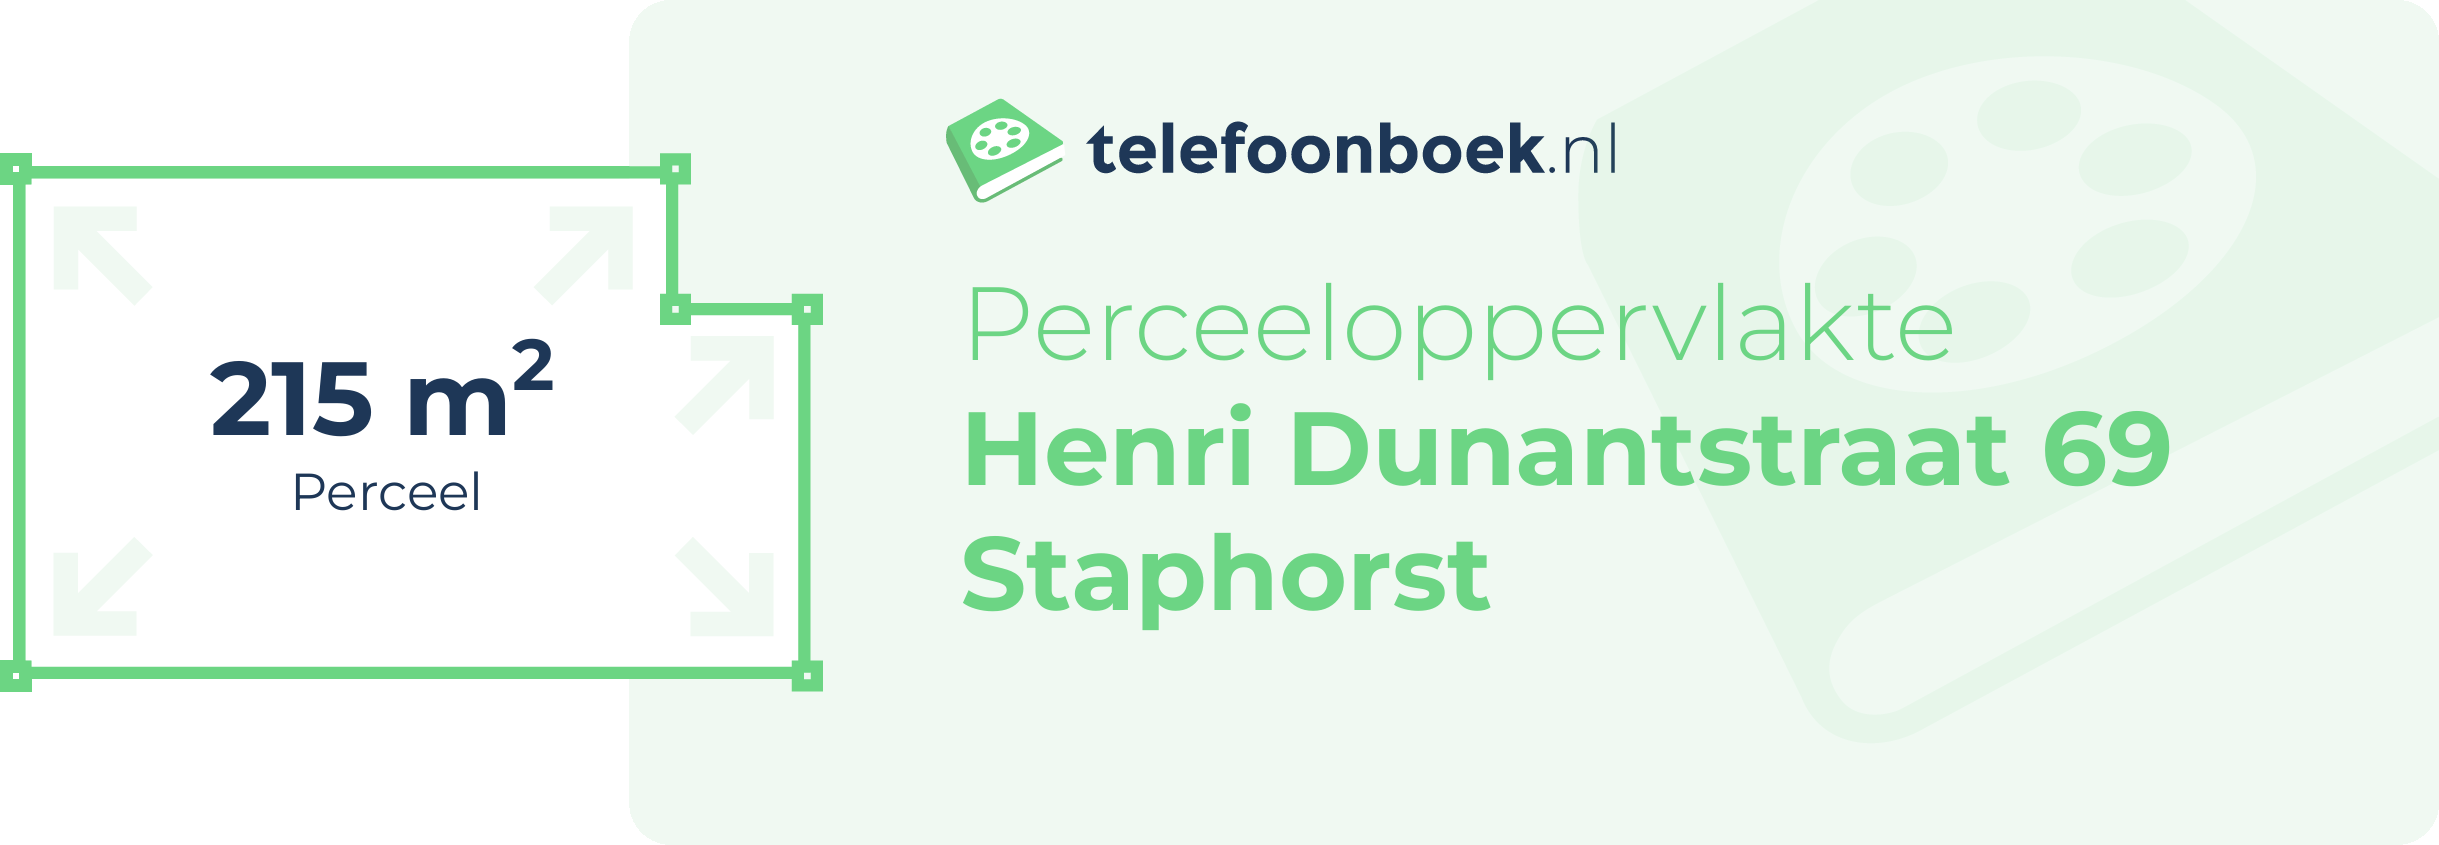 Perceeloppervlakte Henri Dunantstraat 69 Staphorst